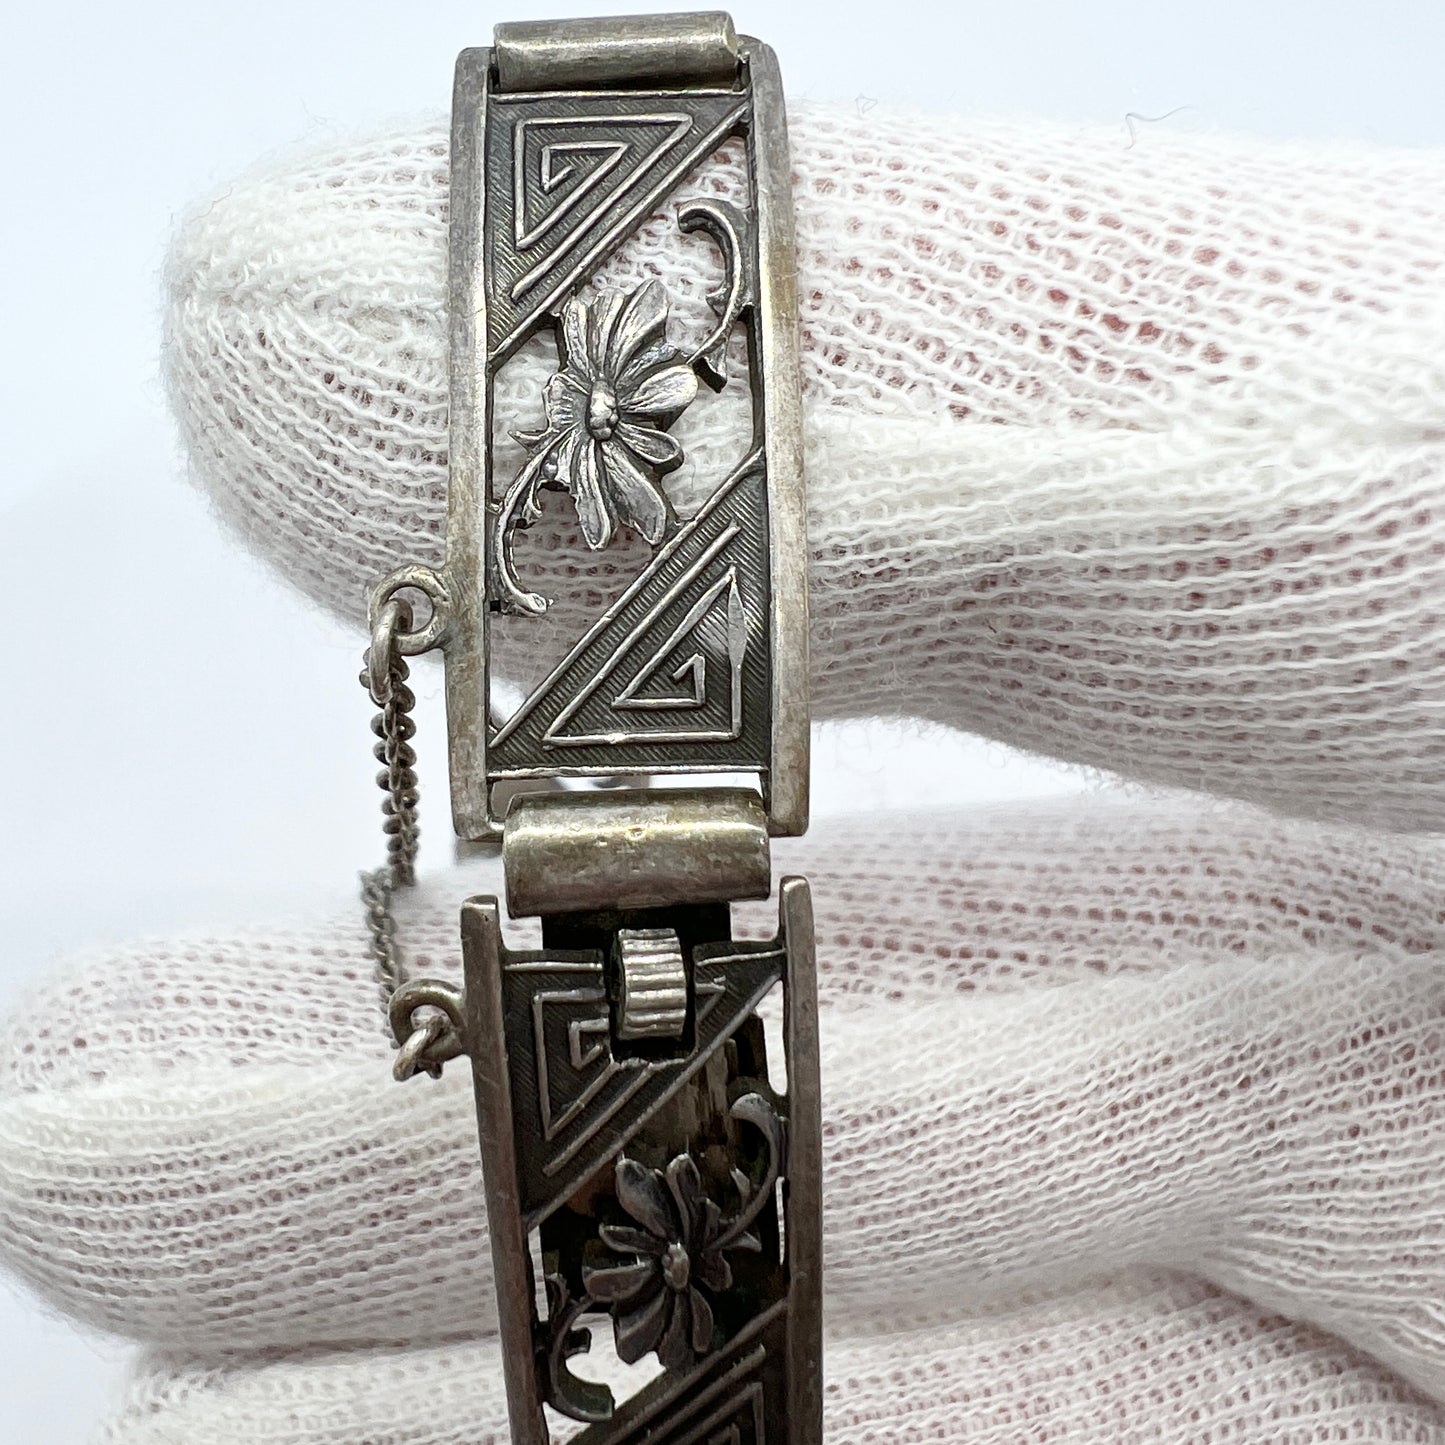 Herman Wist, Finland 1941. Rare War-Time Vintage Solid Silver Bracelet.